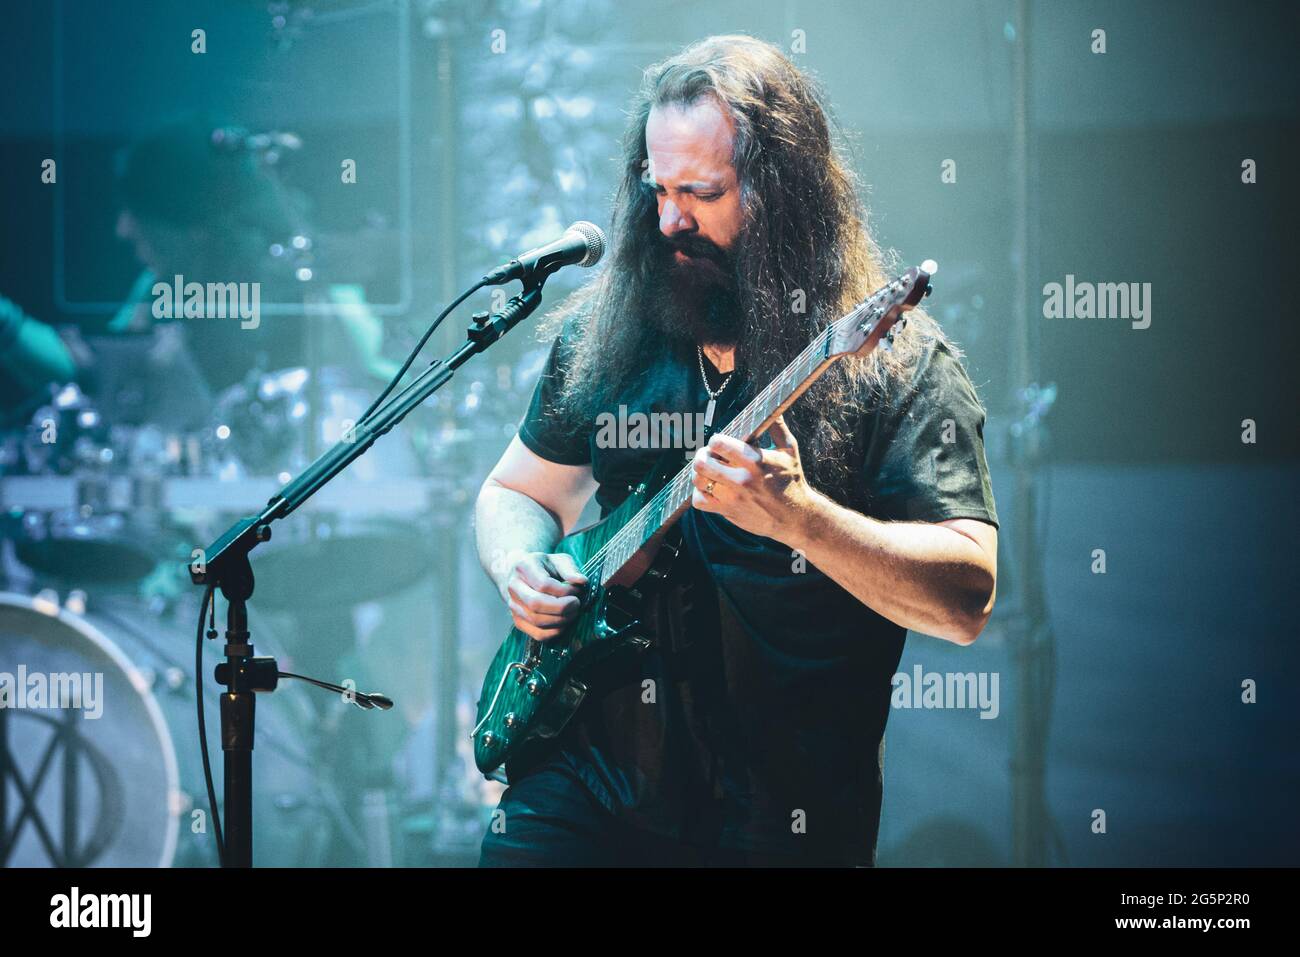 AUDITORIUM LINGOTTO, TURIN, ITALIEN: John Petrucci, Gitarrist der amerikanischen Progressive Metal Band Dream Theater, tritt live auf der Bühne für die „Images, Words and Beyond“ Tour in Turin auf. Stockfoto